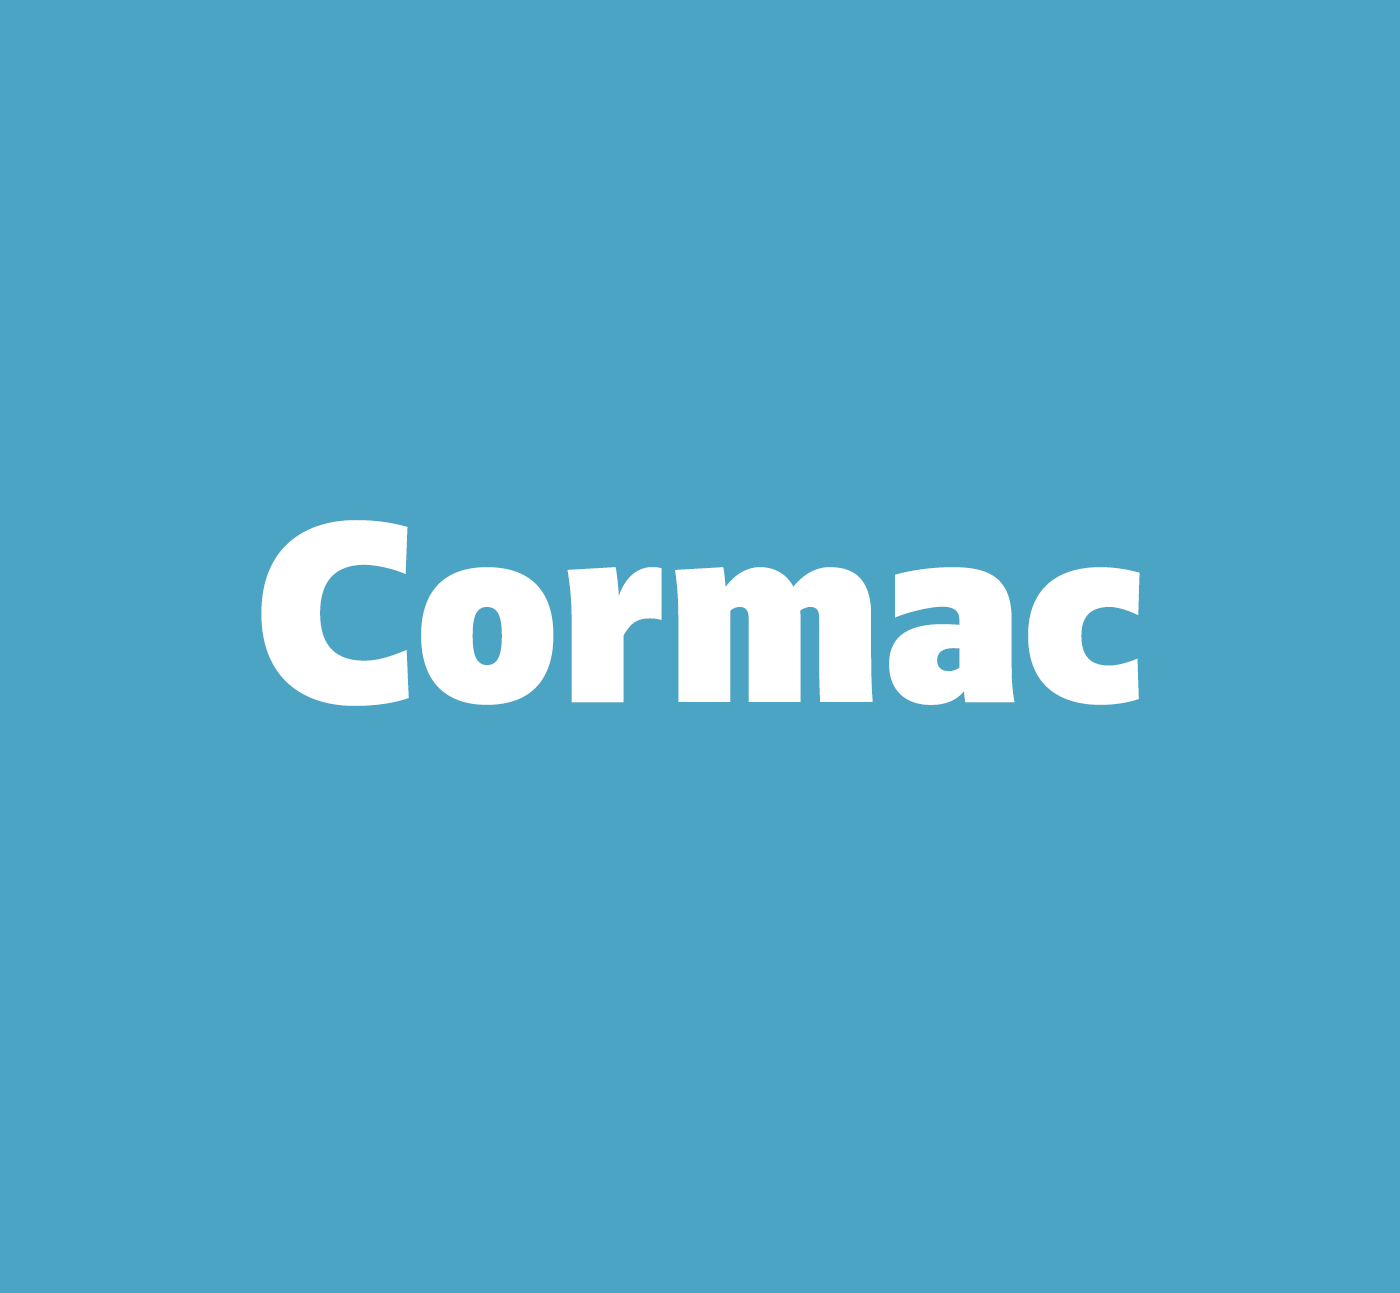 Beispiel einer Cormac-Schriftart